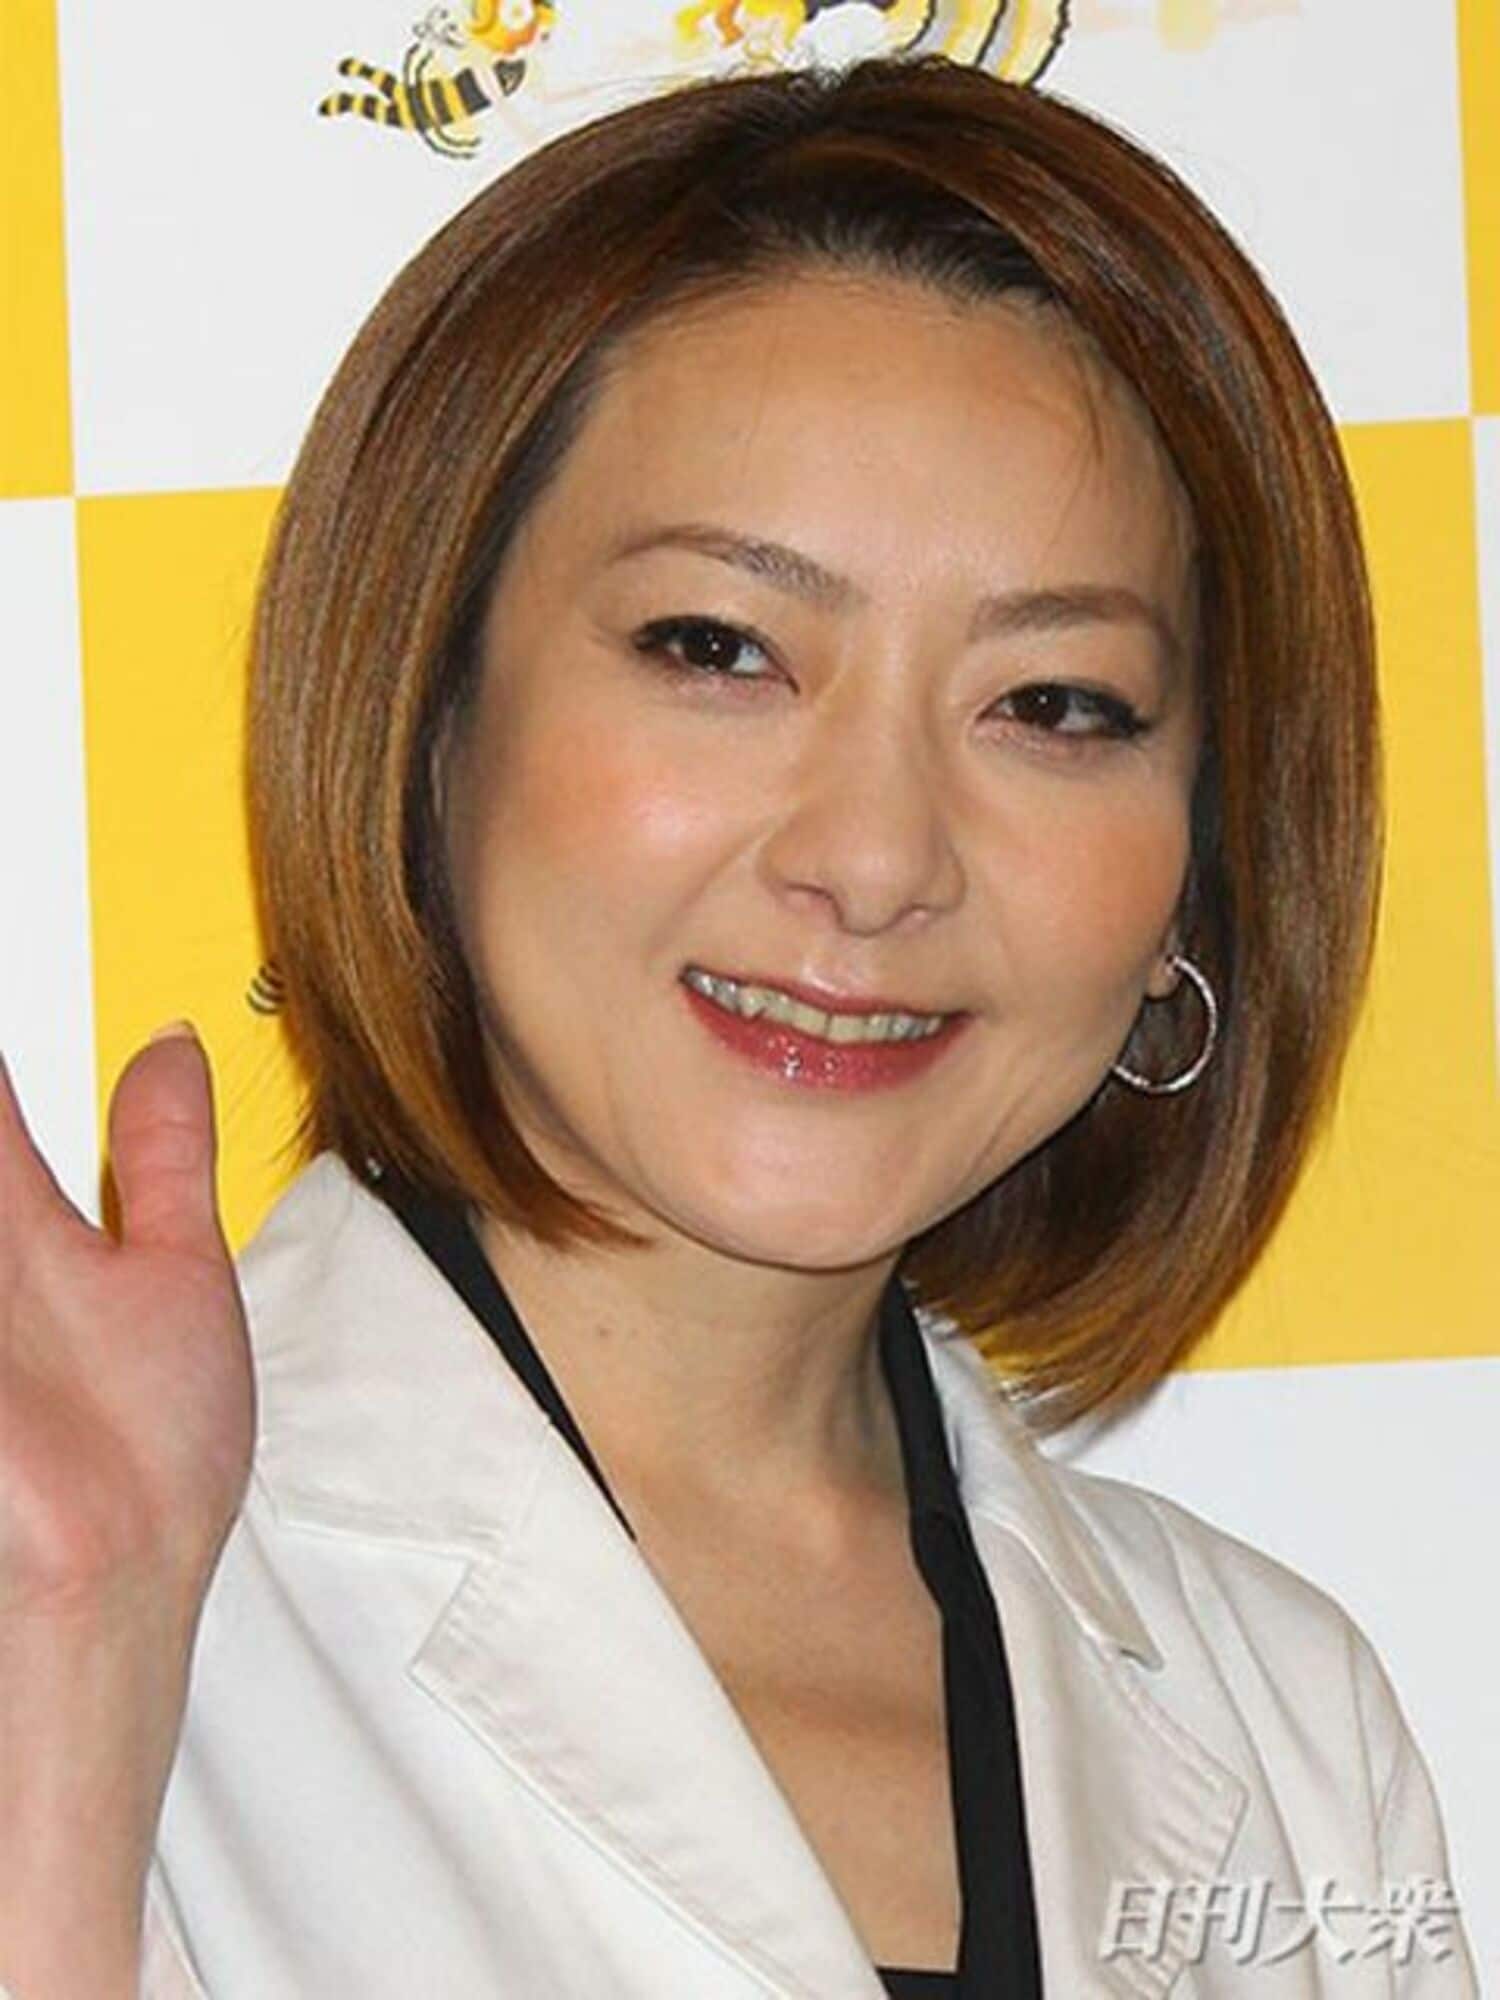 西川史子「悪いのは柴田」ファンキー不倫騒動で、元妻を擁護発言の画像